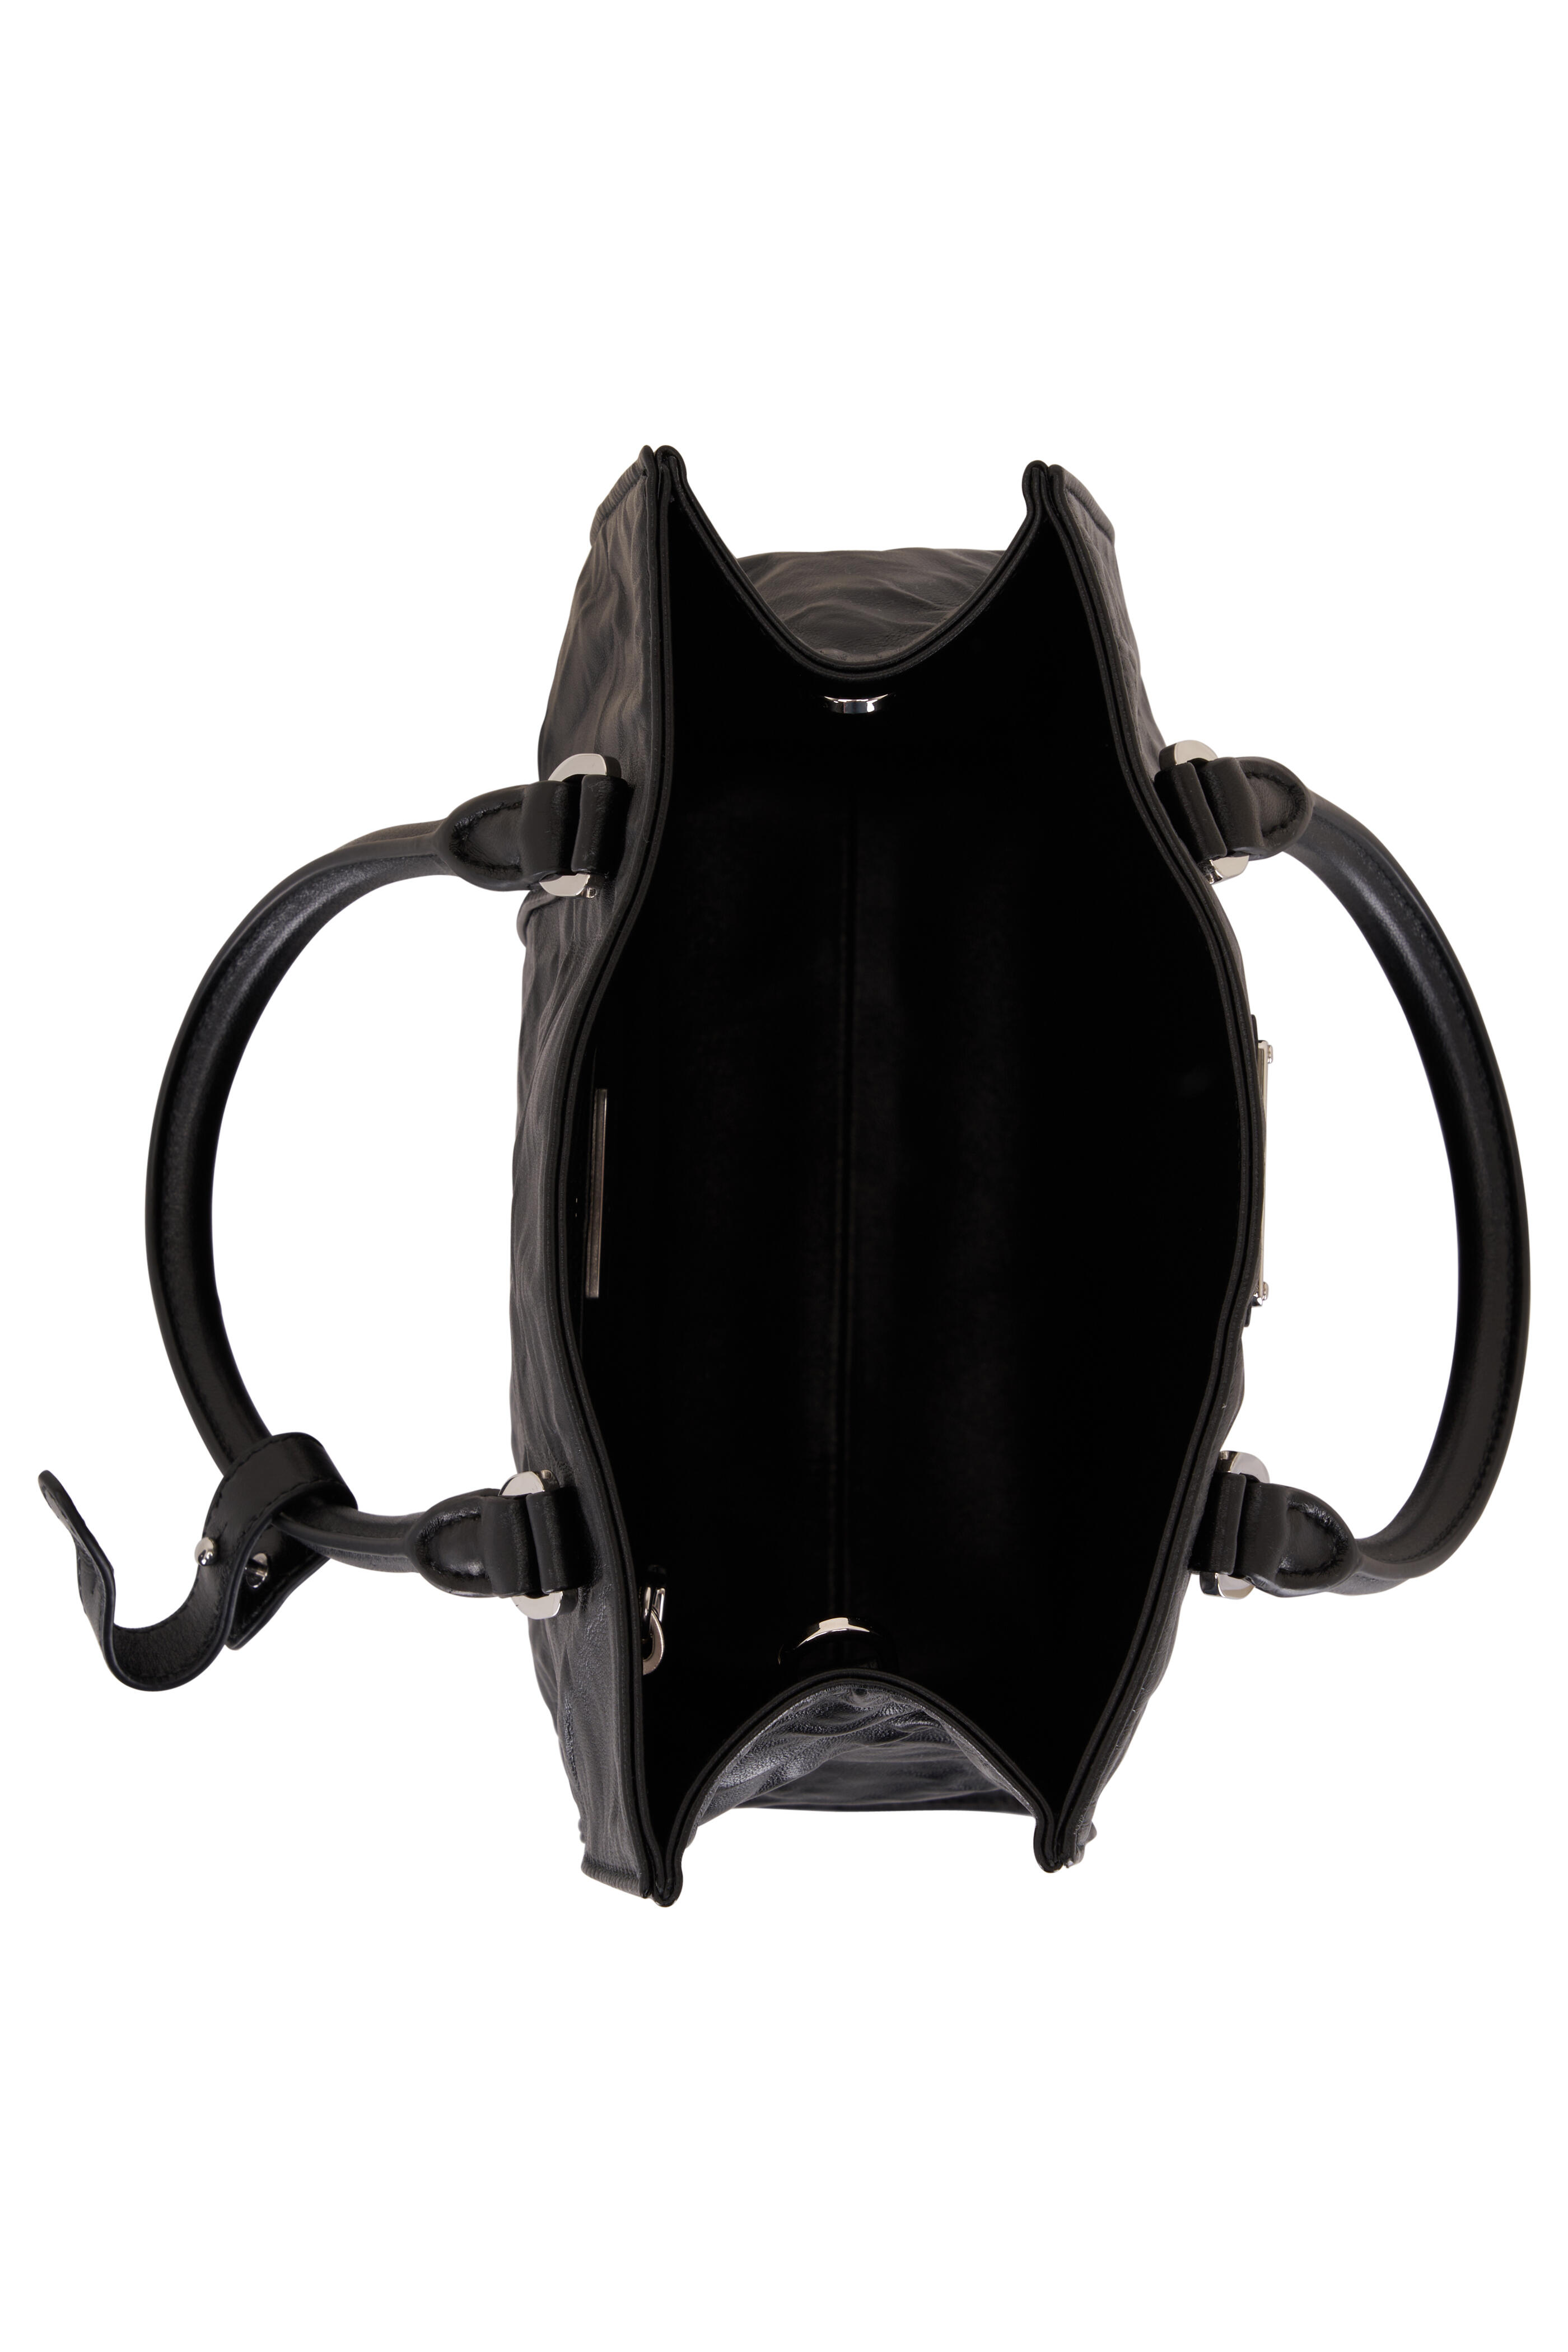 Prada Black Embossed-logo Tote Bag for Men